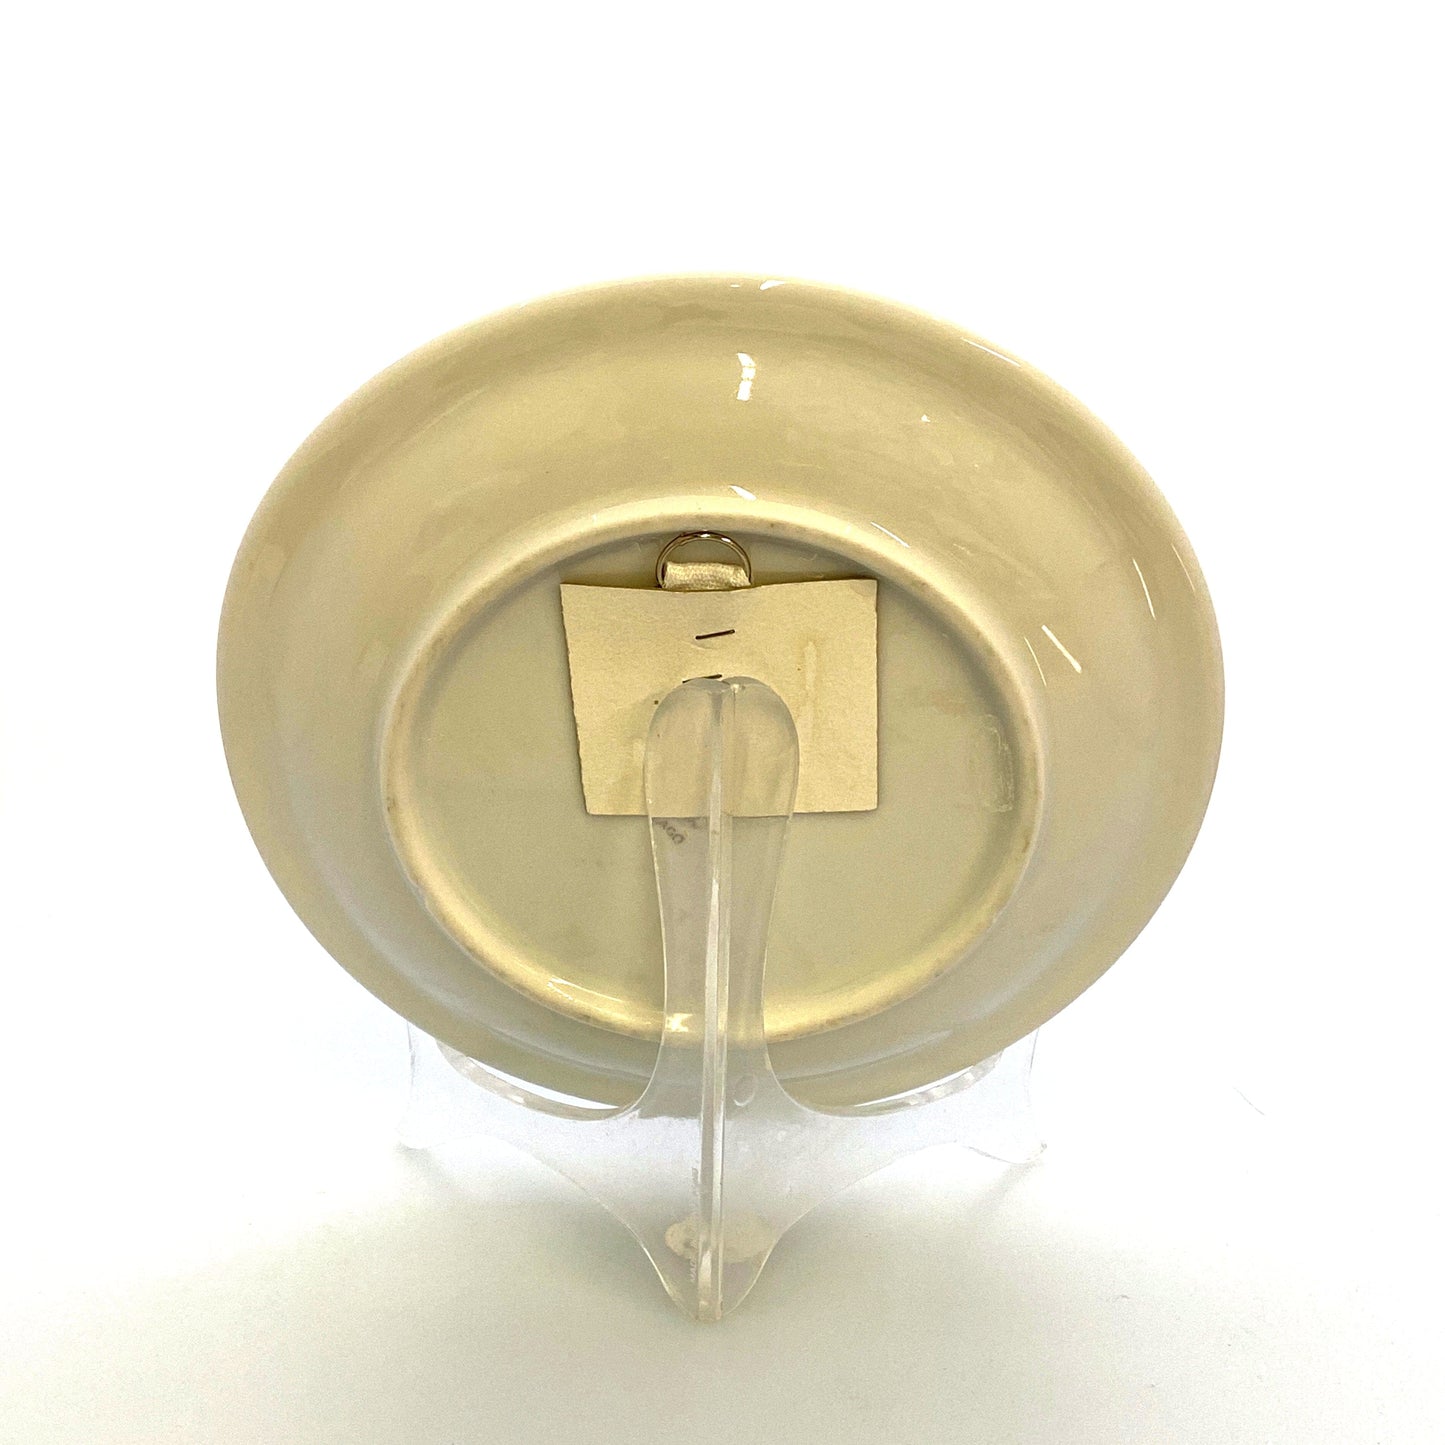 Collectors Souvenir Plate “ROMA - BASILICA DI S PIETRO” Collectible White 8”